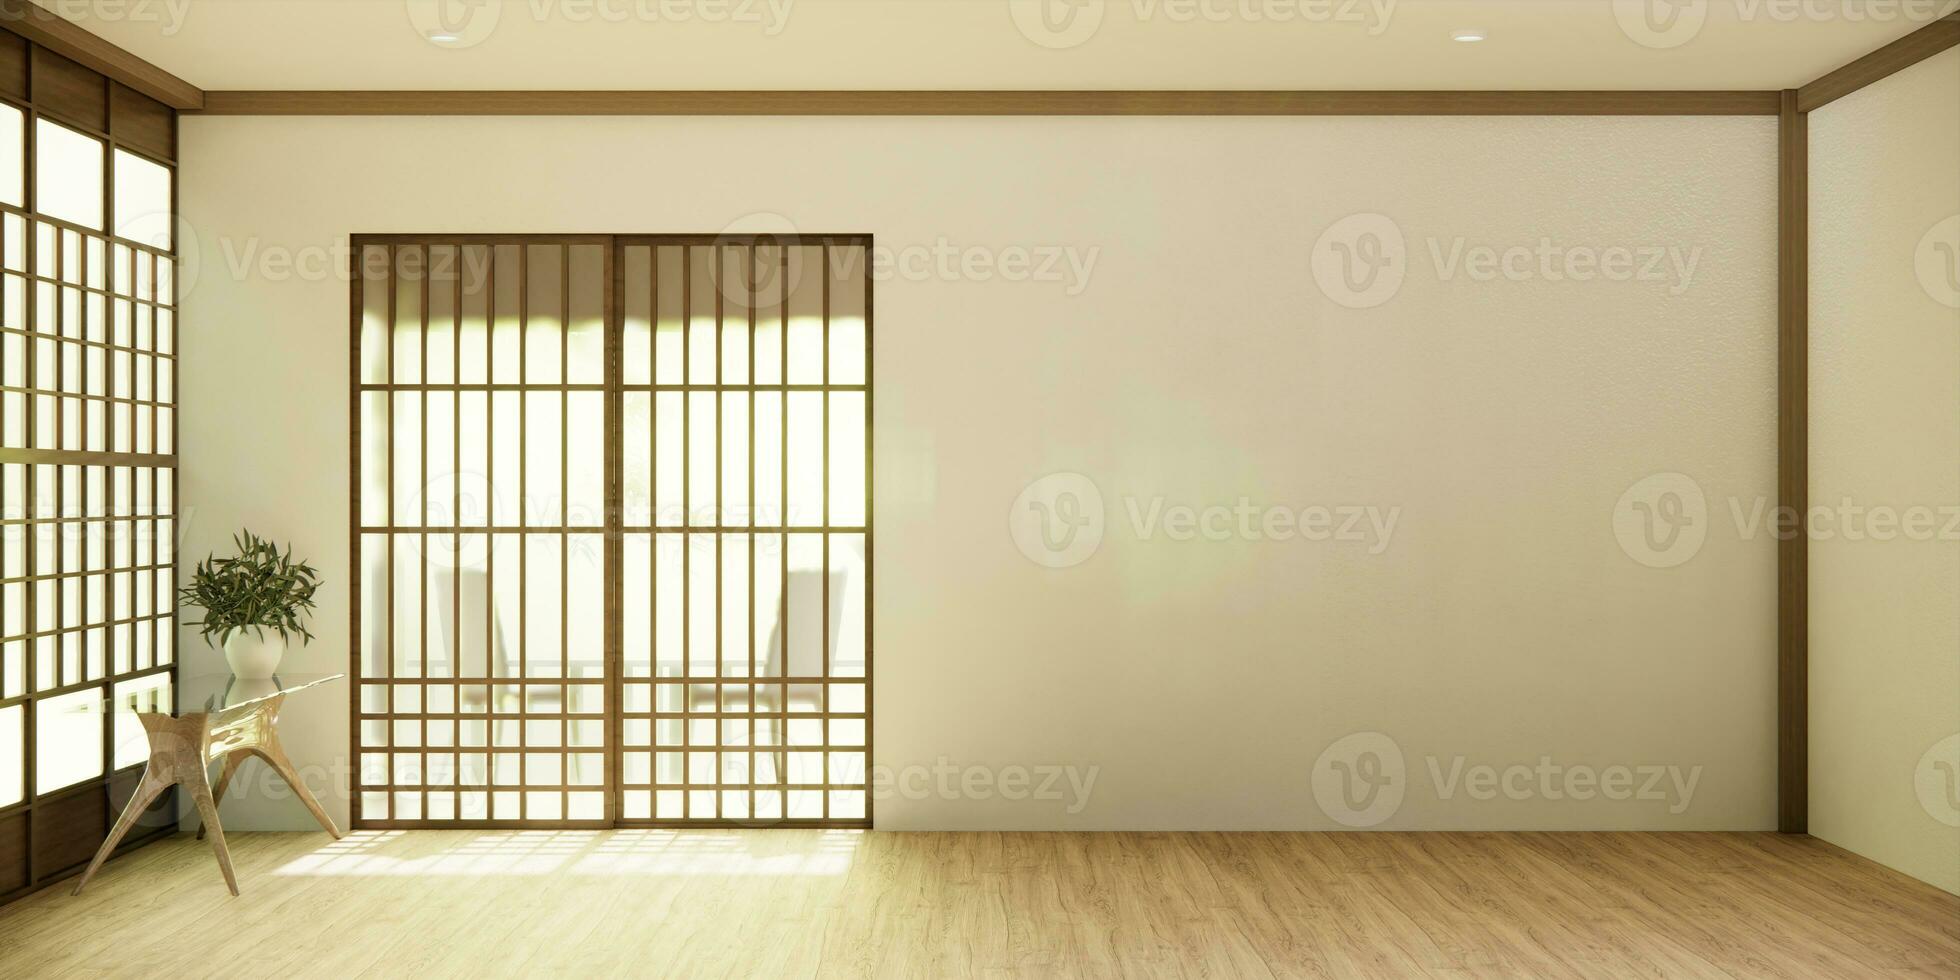 de hall rena japansk minimalistisk rum interiör, 3d tolkning foto